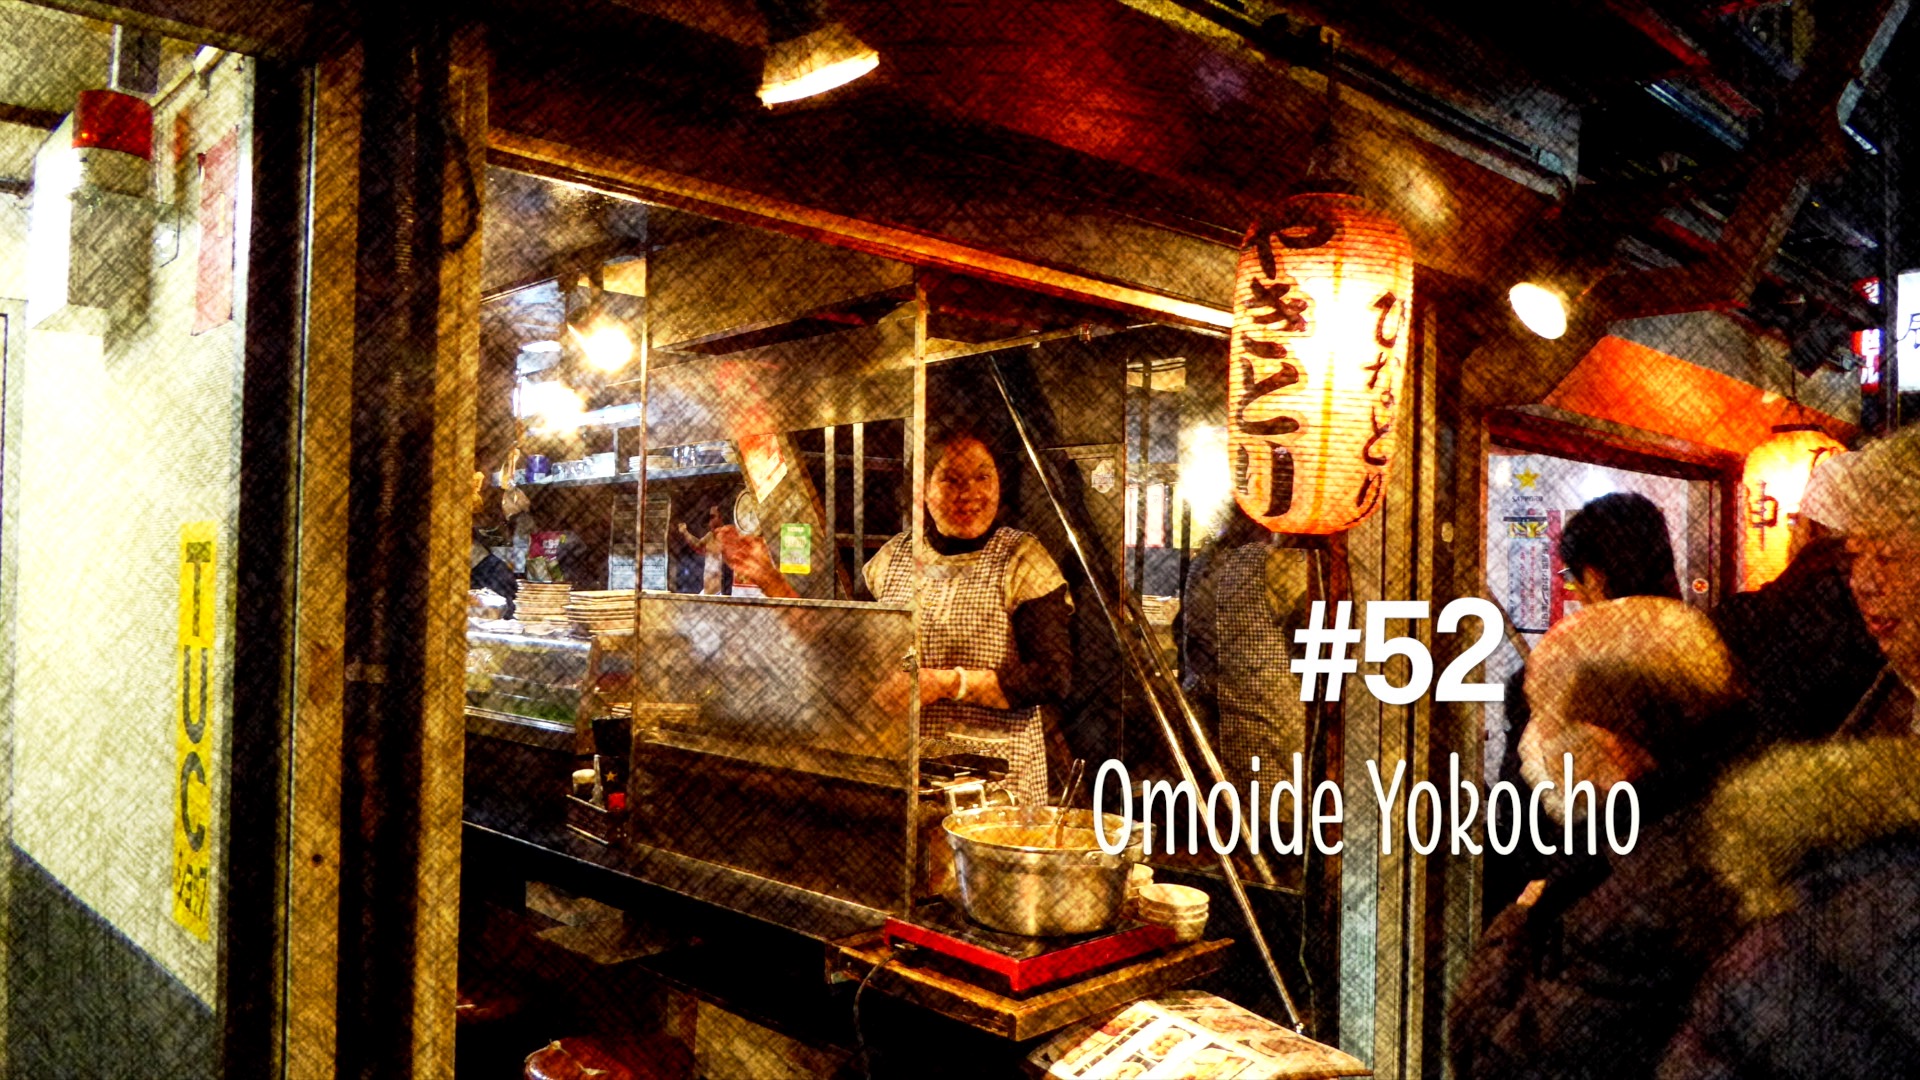 La ruelle Omoide Yokocho à Tokyo (#52)